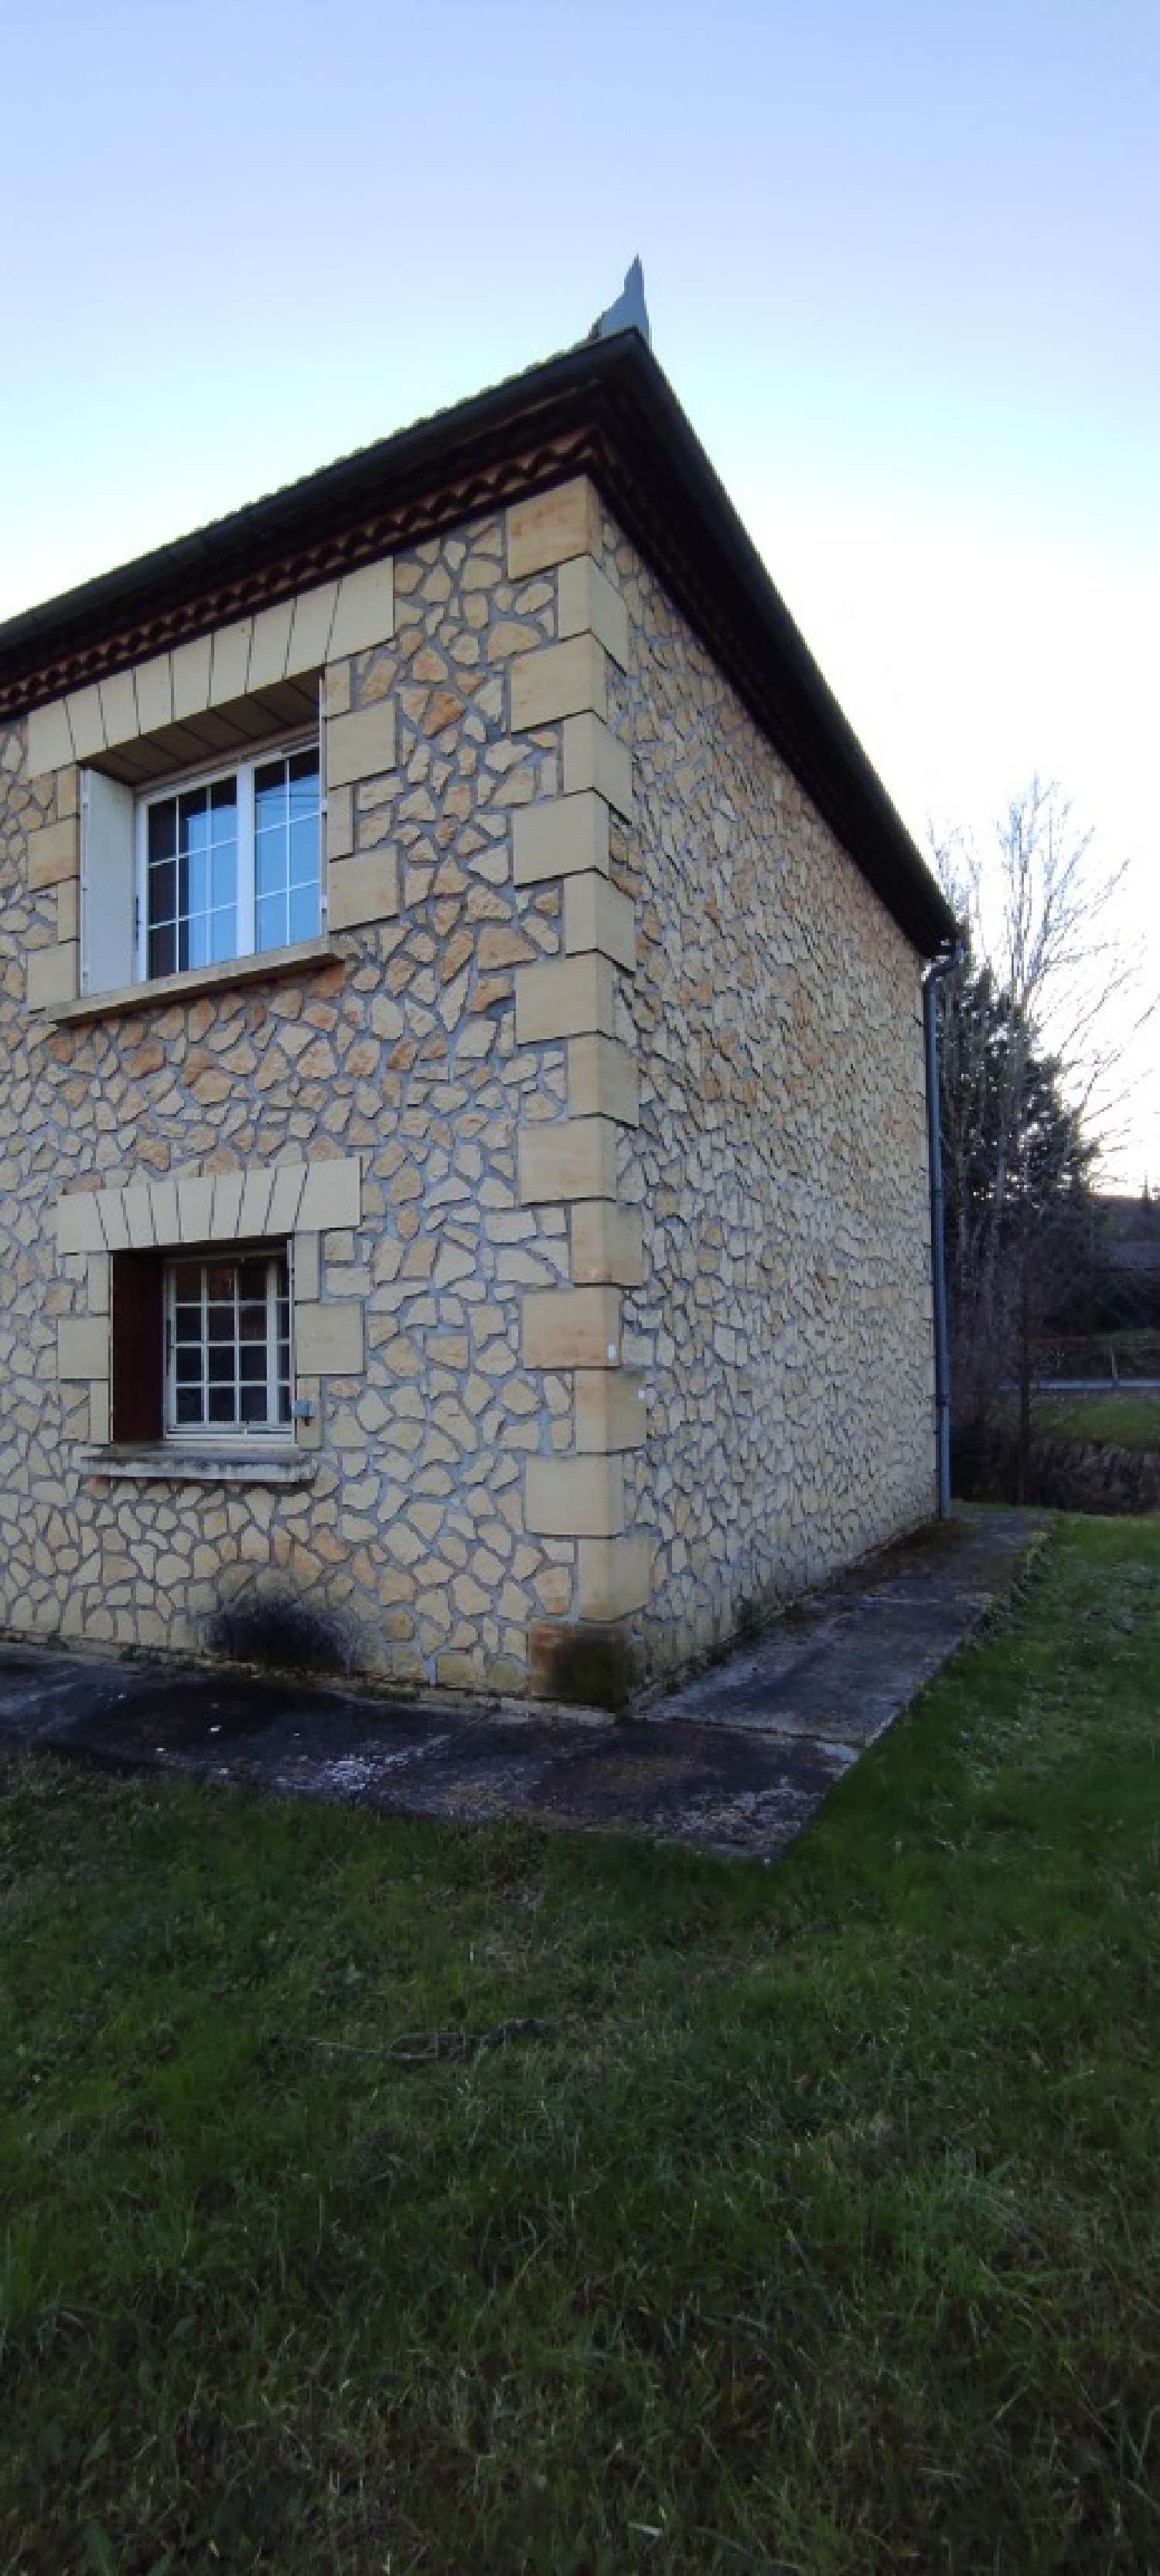  à vendre maison Lalinde Dordogne 4